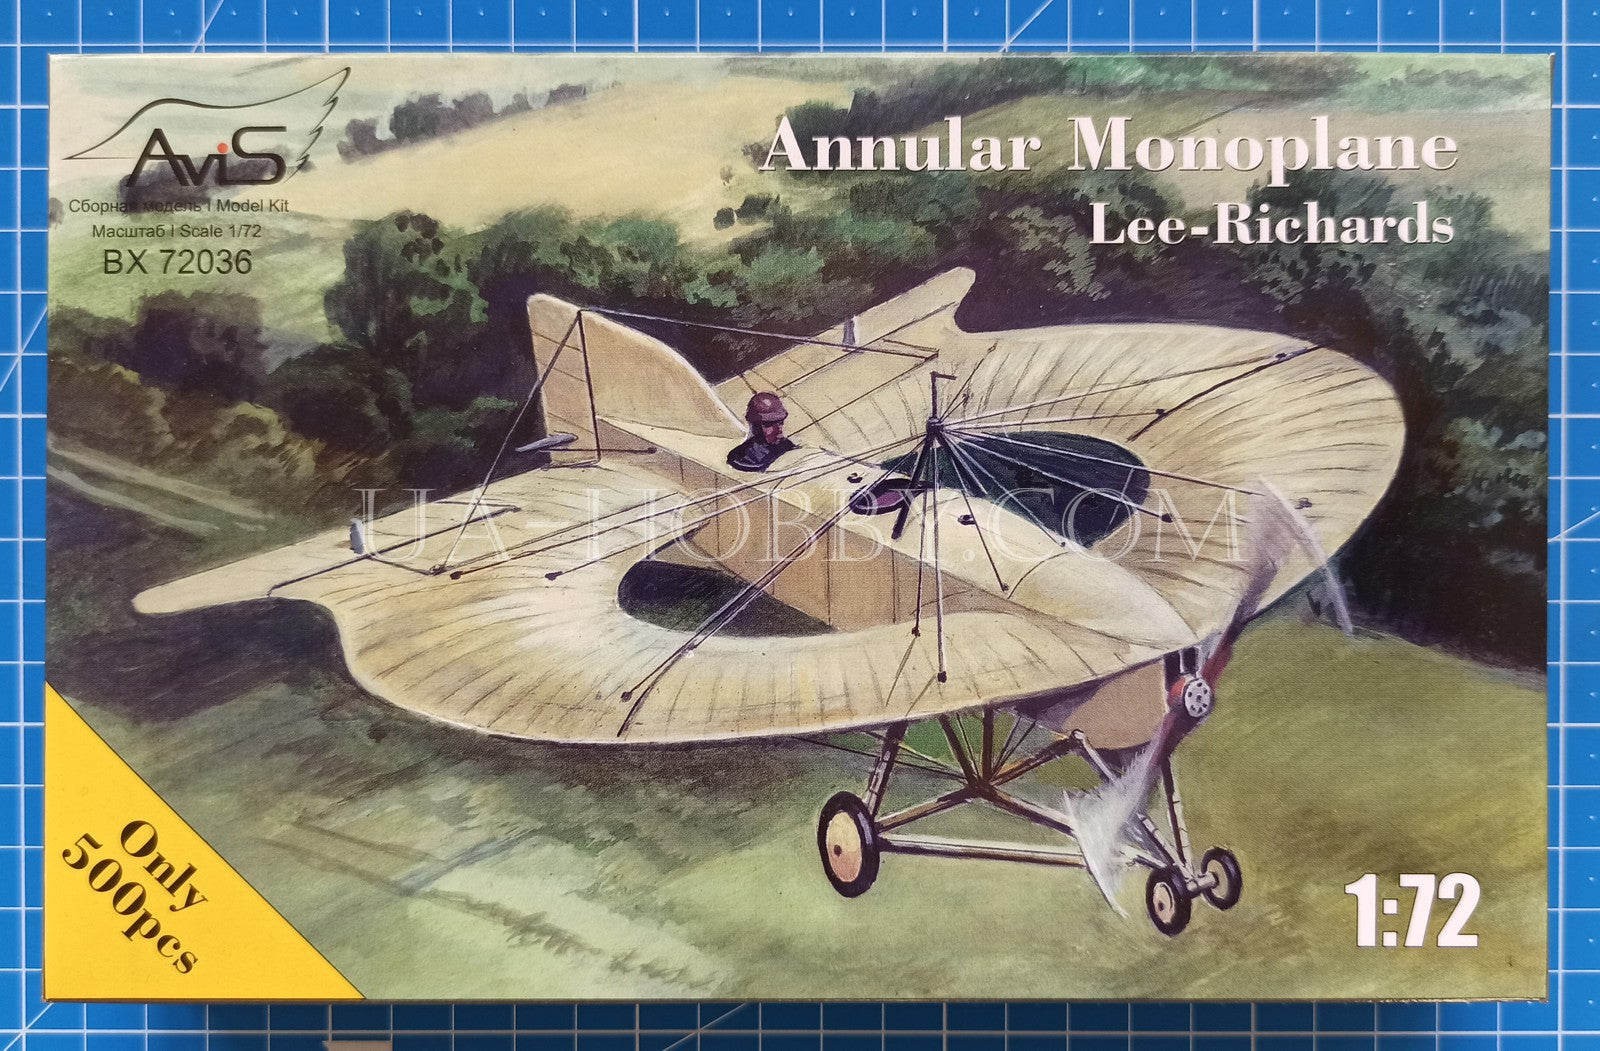 1/72 Lee-Richards Annular Monoplane. AviS BX 72036